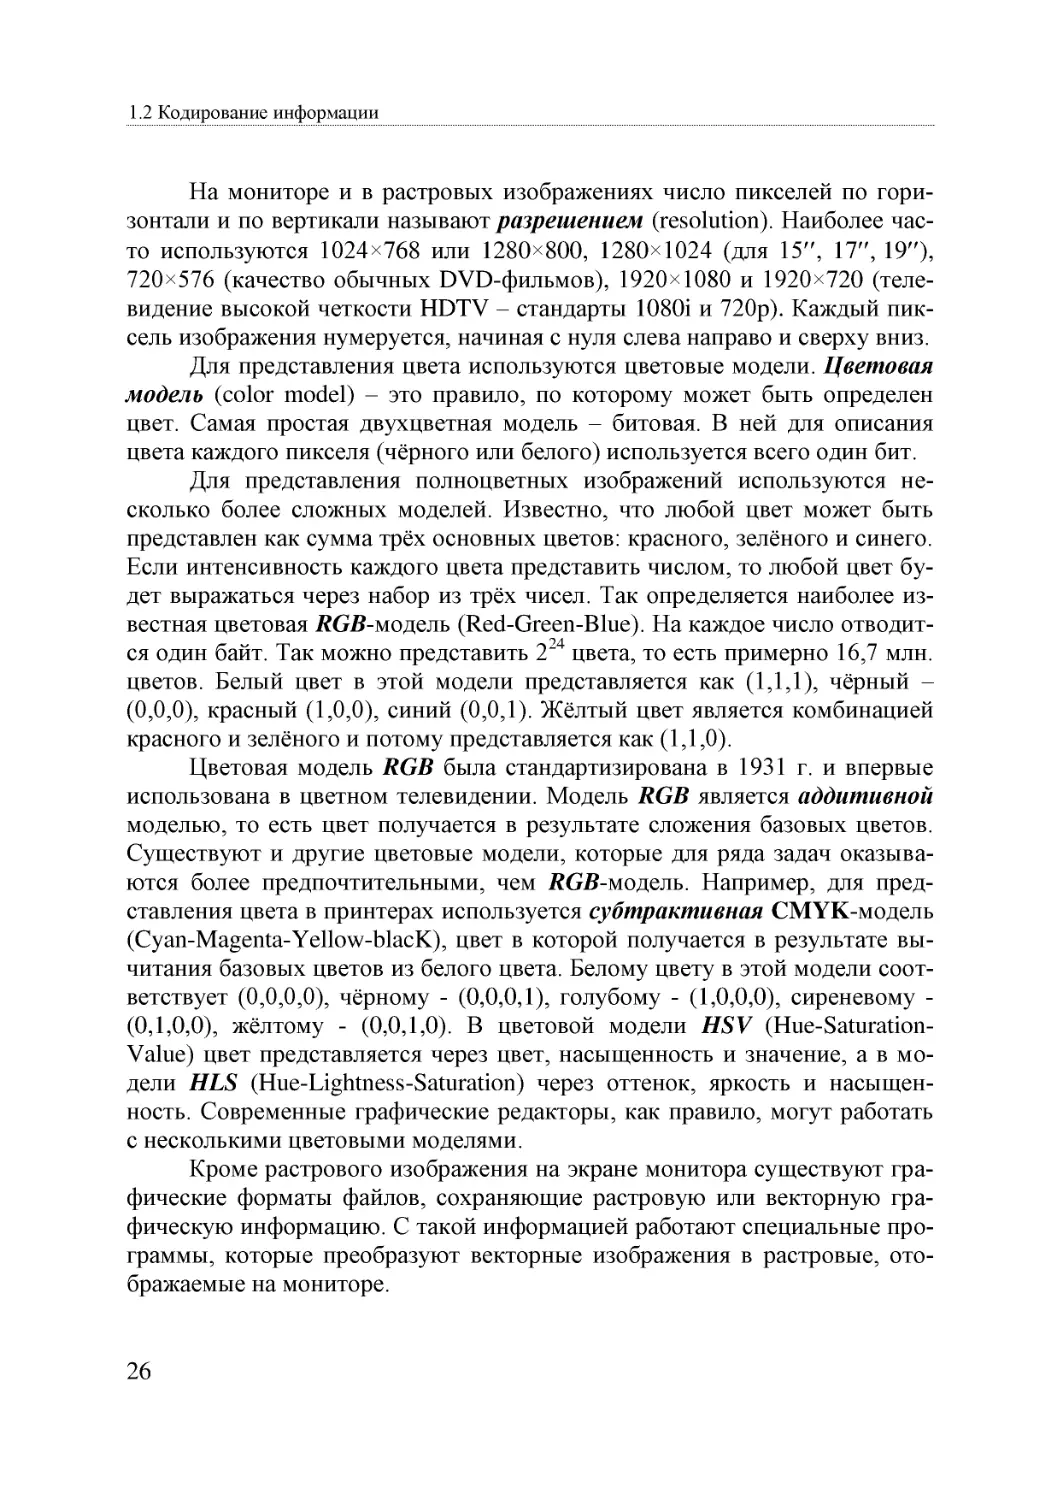 Informatika_Uchebnik_dlya_vuzov_2010 26